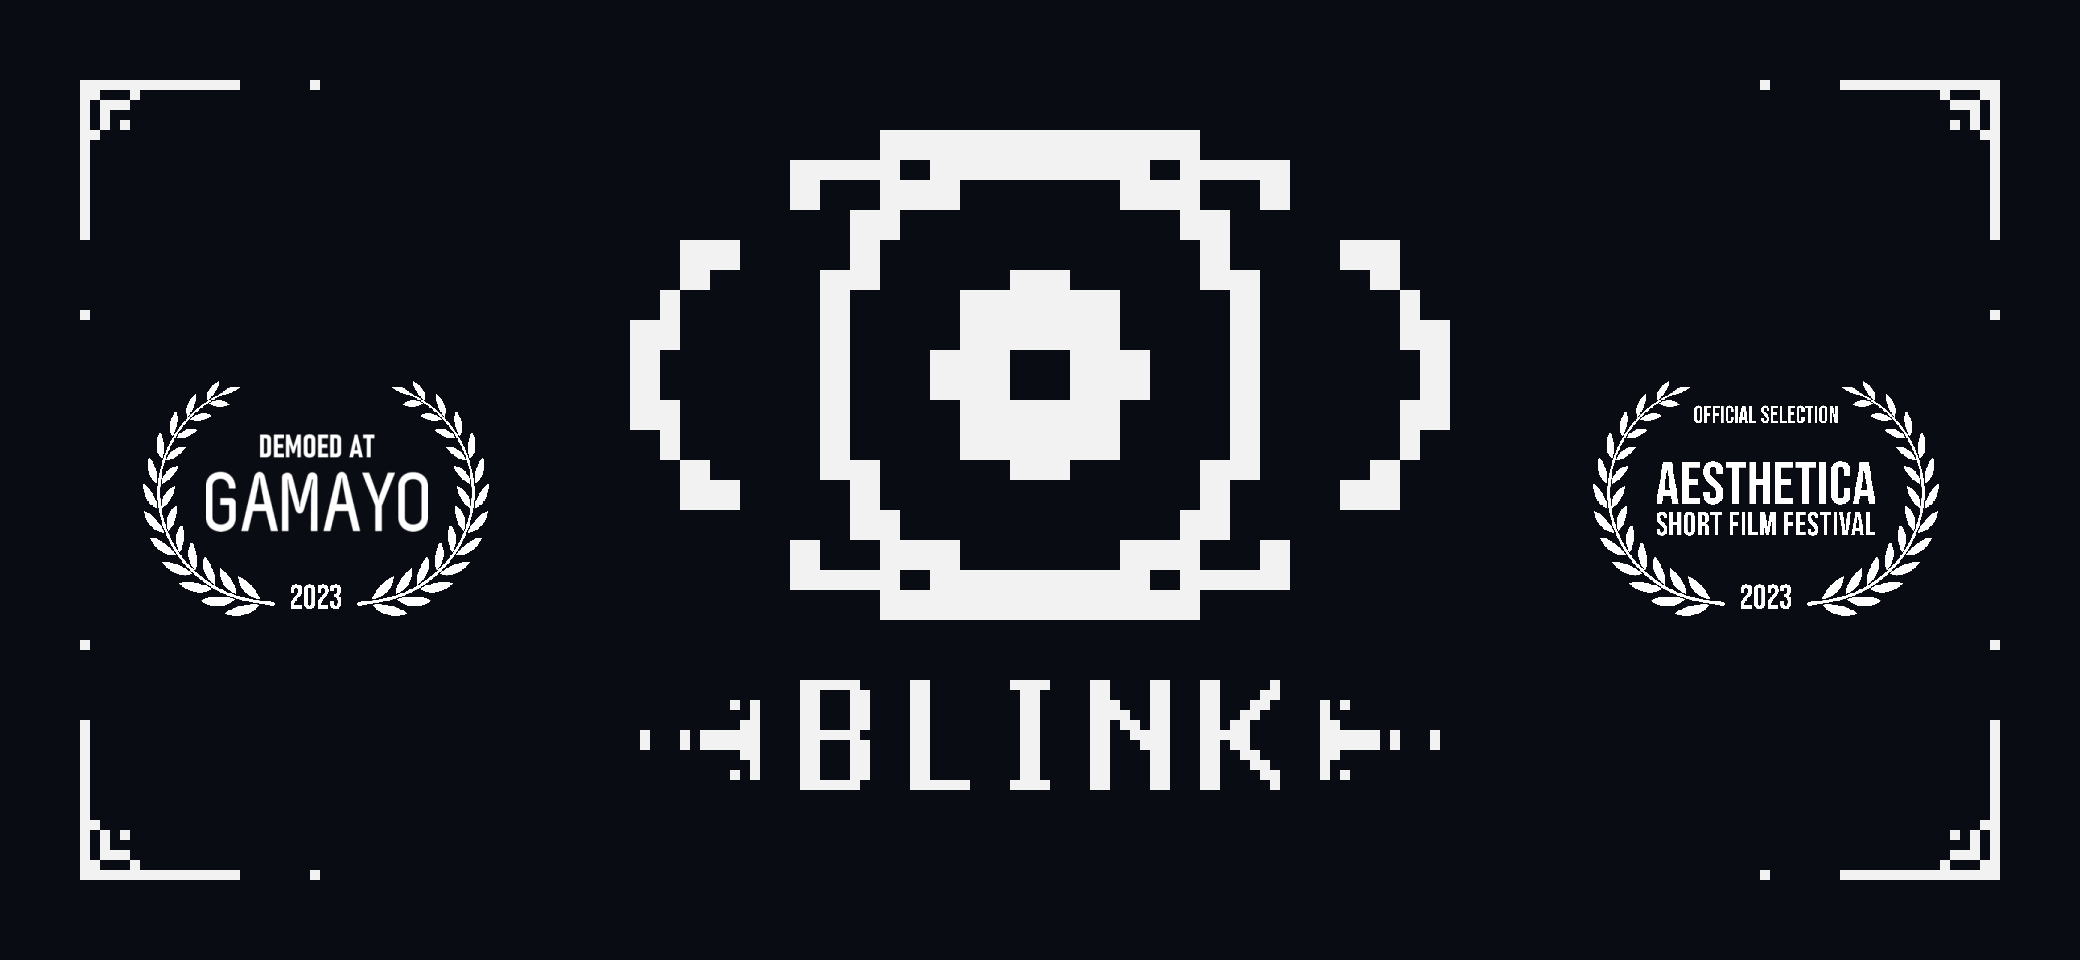 - BLINK -